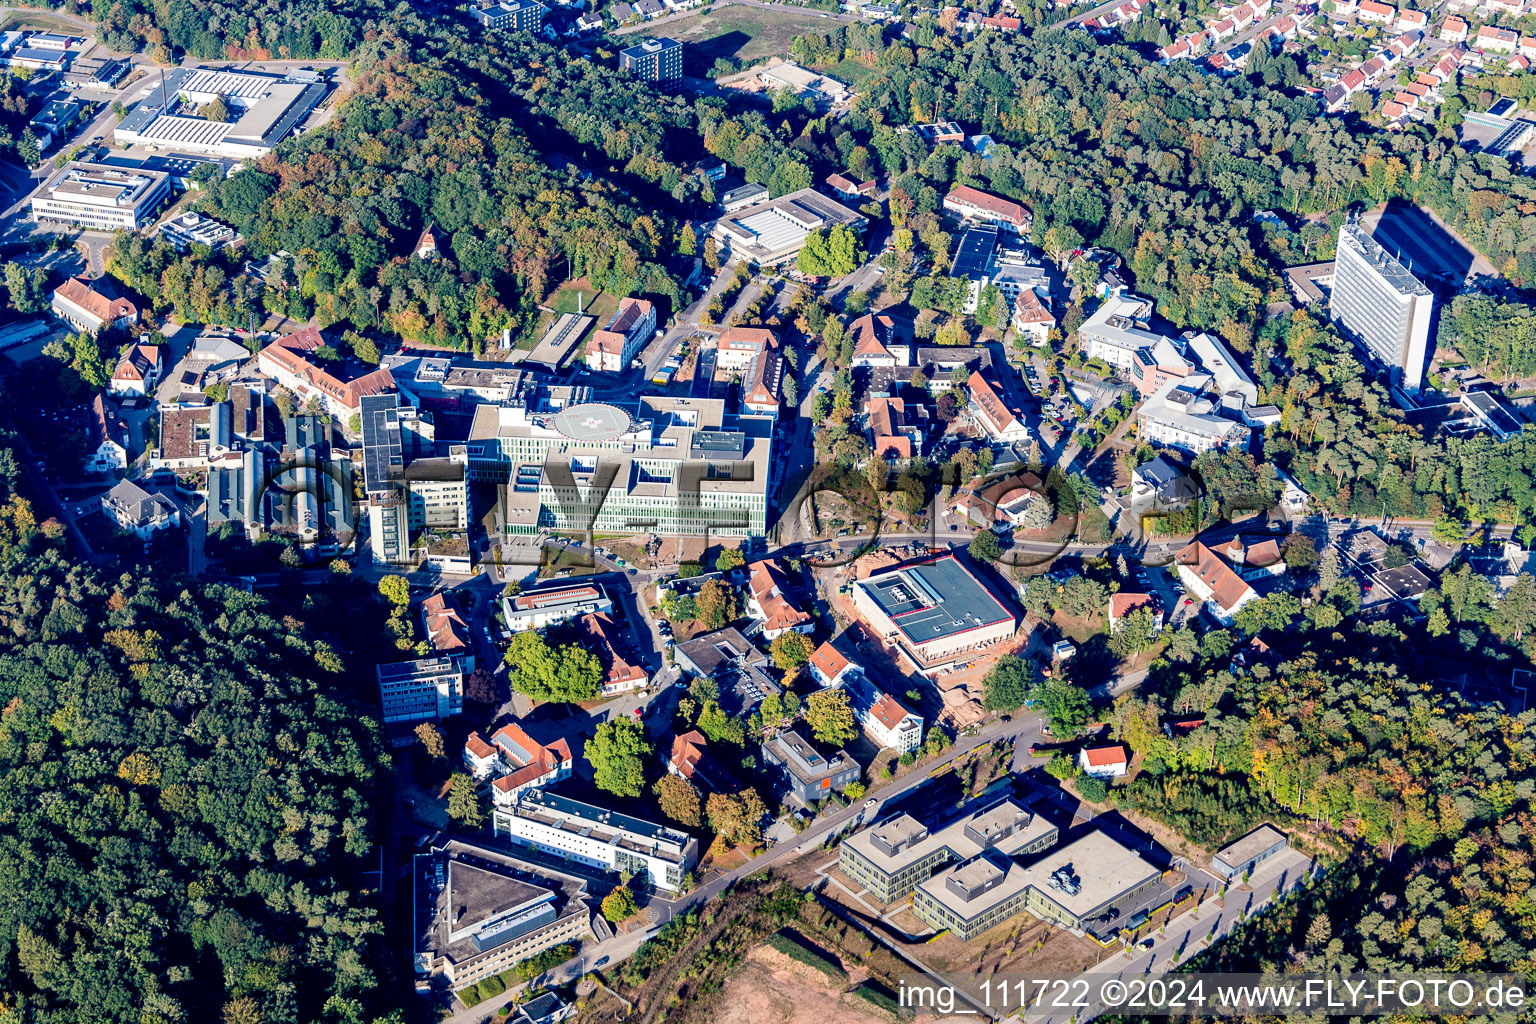 Vue aérienne de Terrain hospitalier de l'hôpital universitaire de la Sarre à Homburg dans le département Sarre, Allemagne